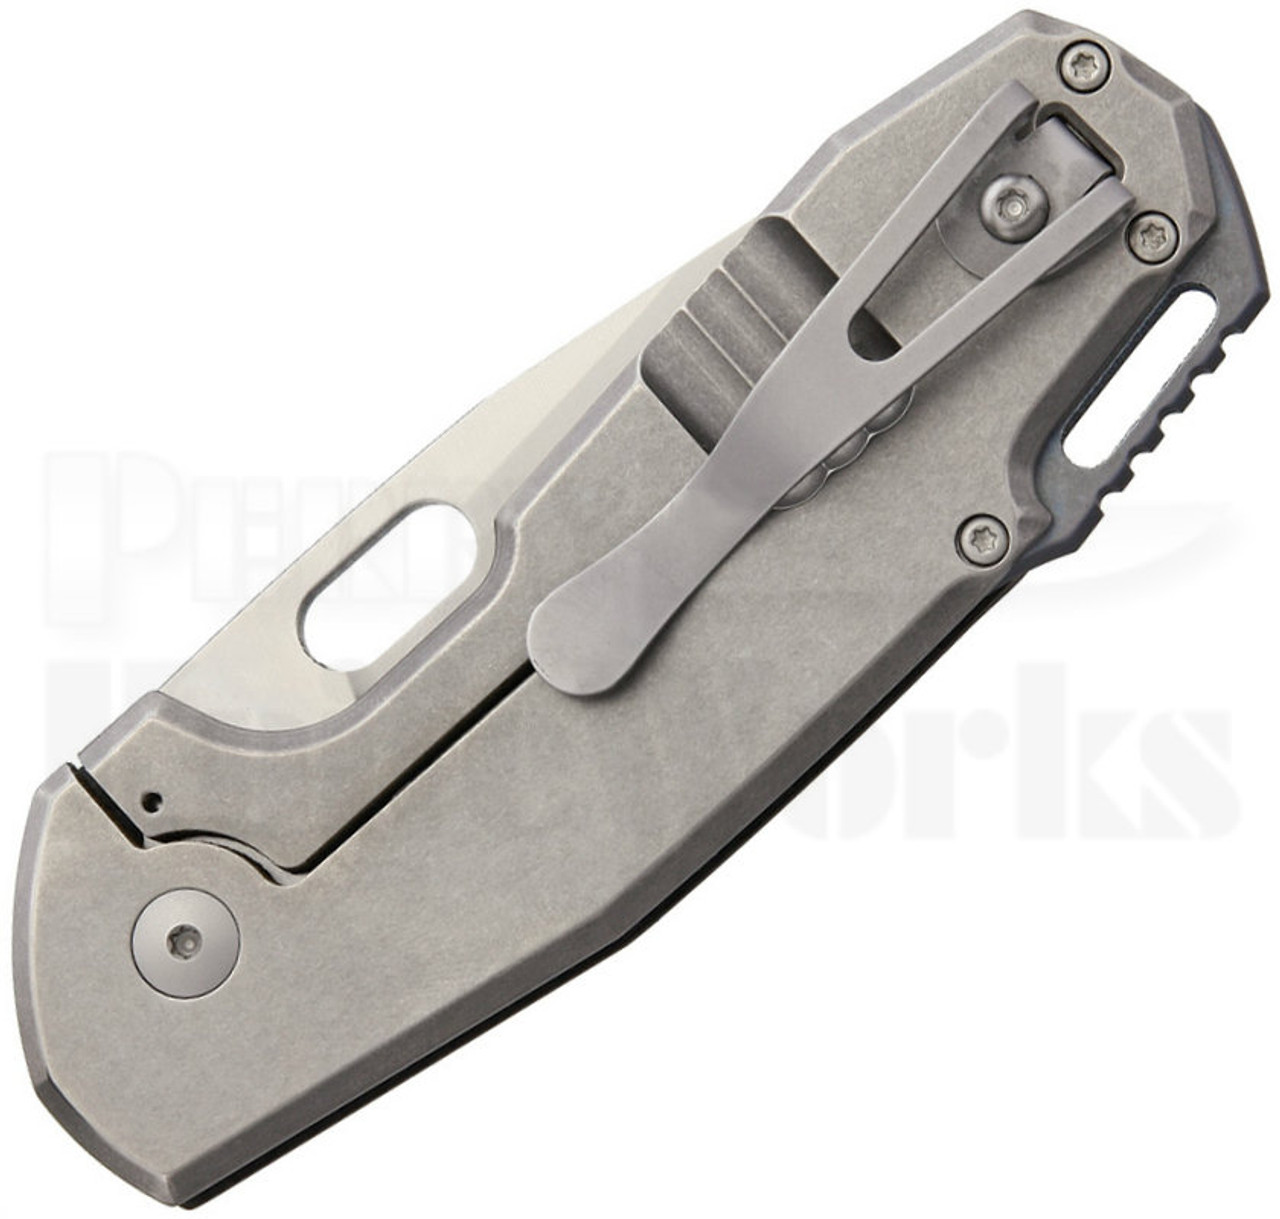 Viper Knives Vox Odino C/F Frame Lock Knife Voxnaes Design (Satin)